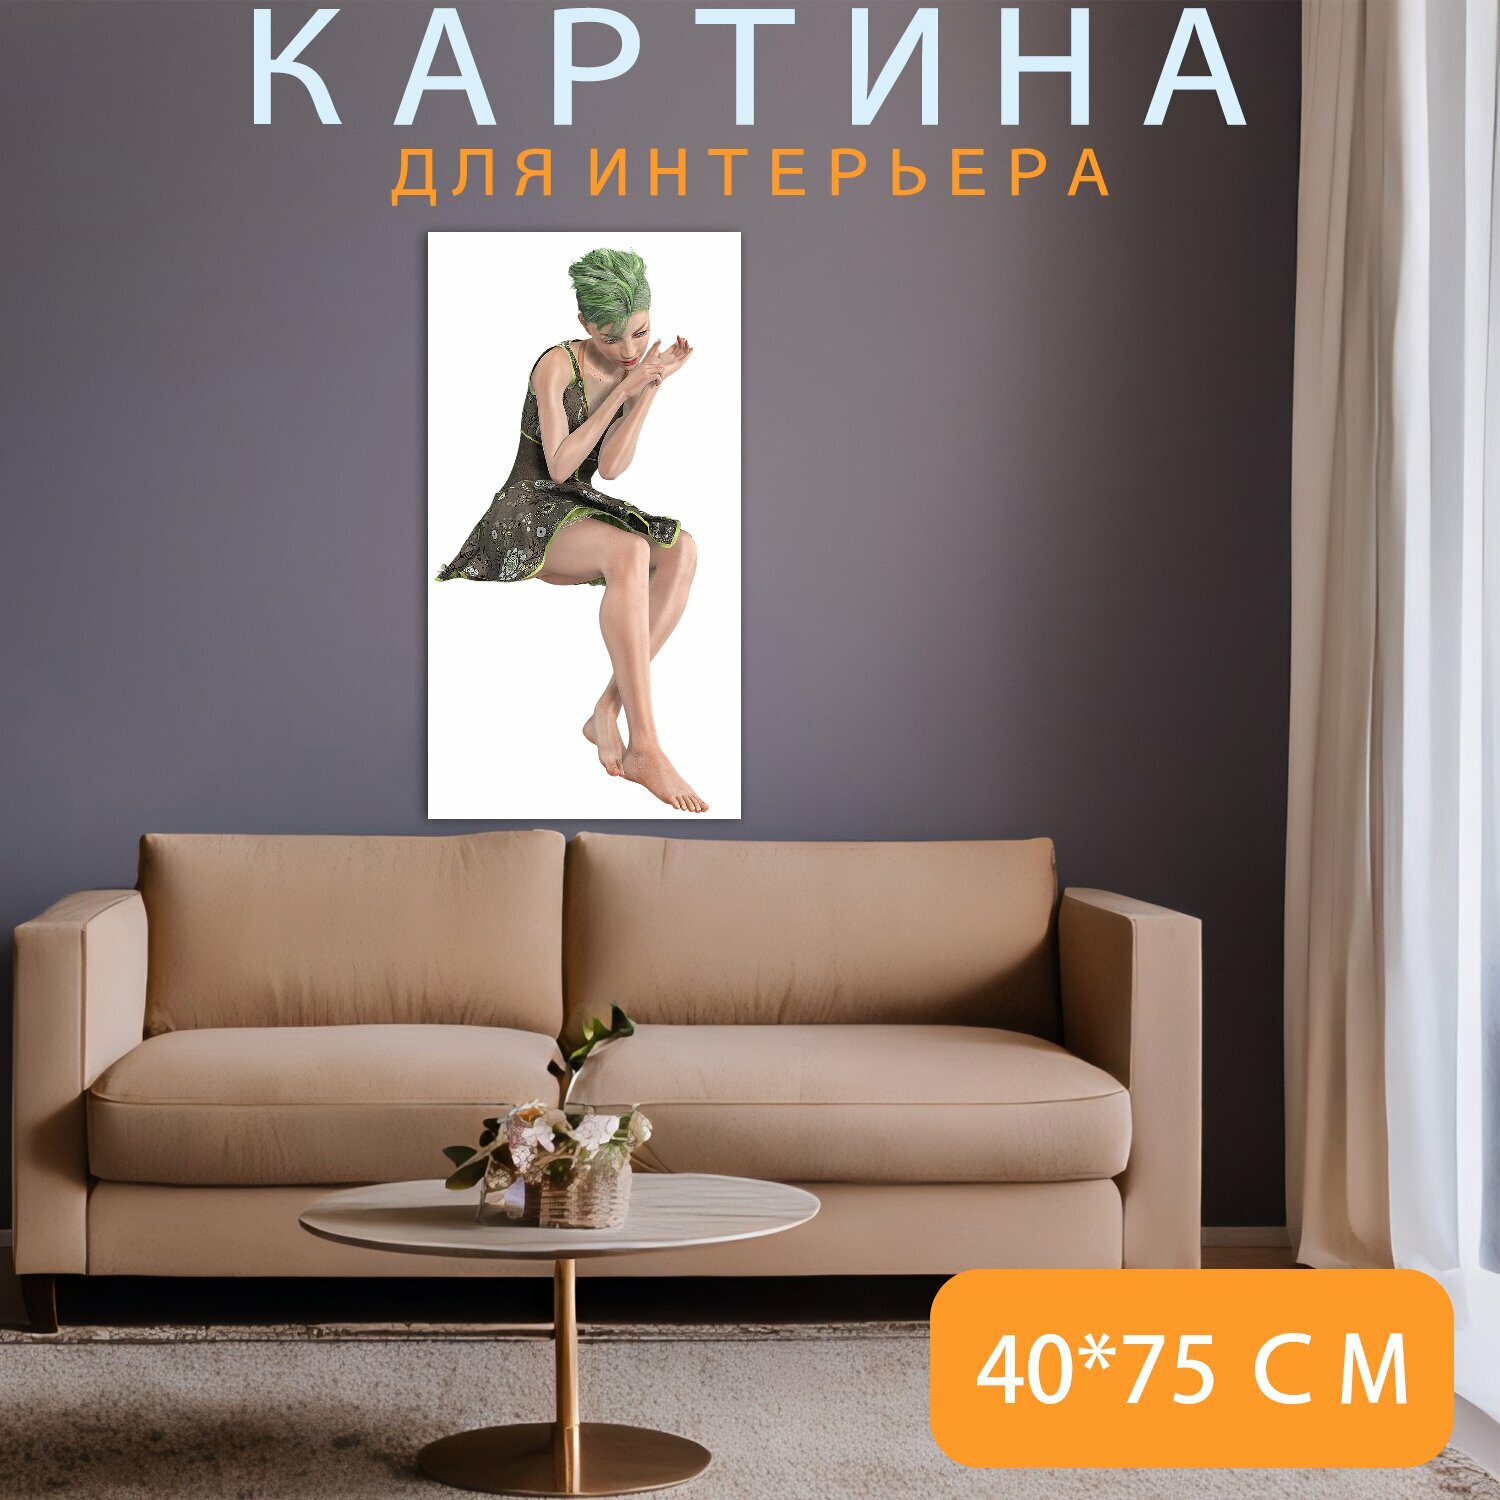 Картина на холсте "Женщина, сидя, платье" на подрамнике 40х75 см. для интерьера